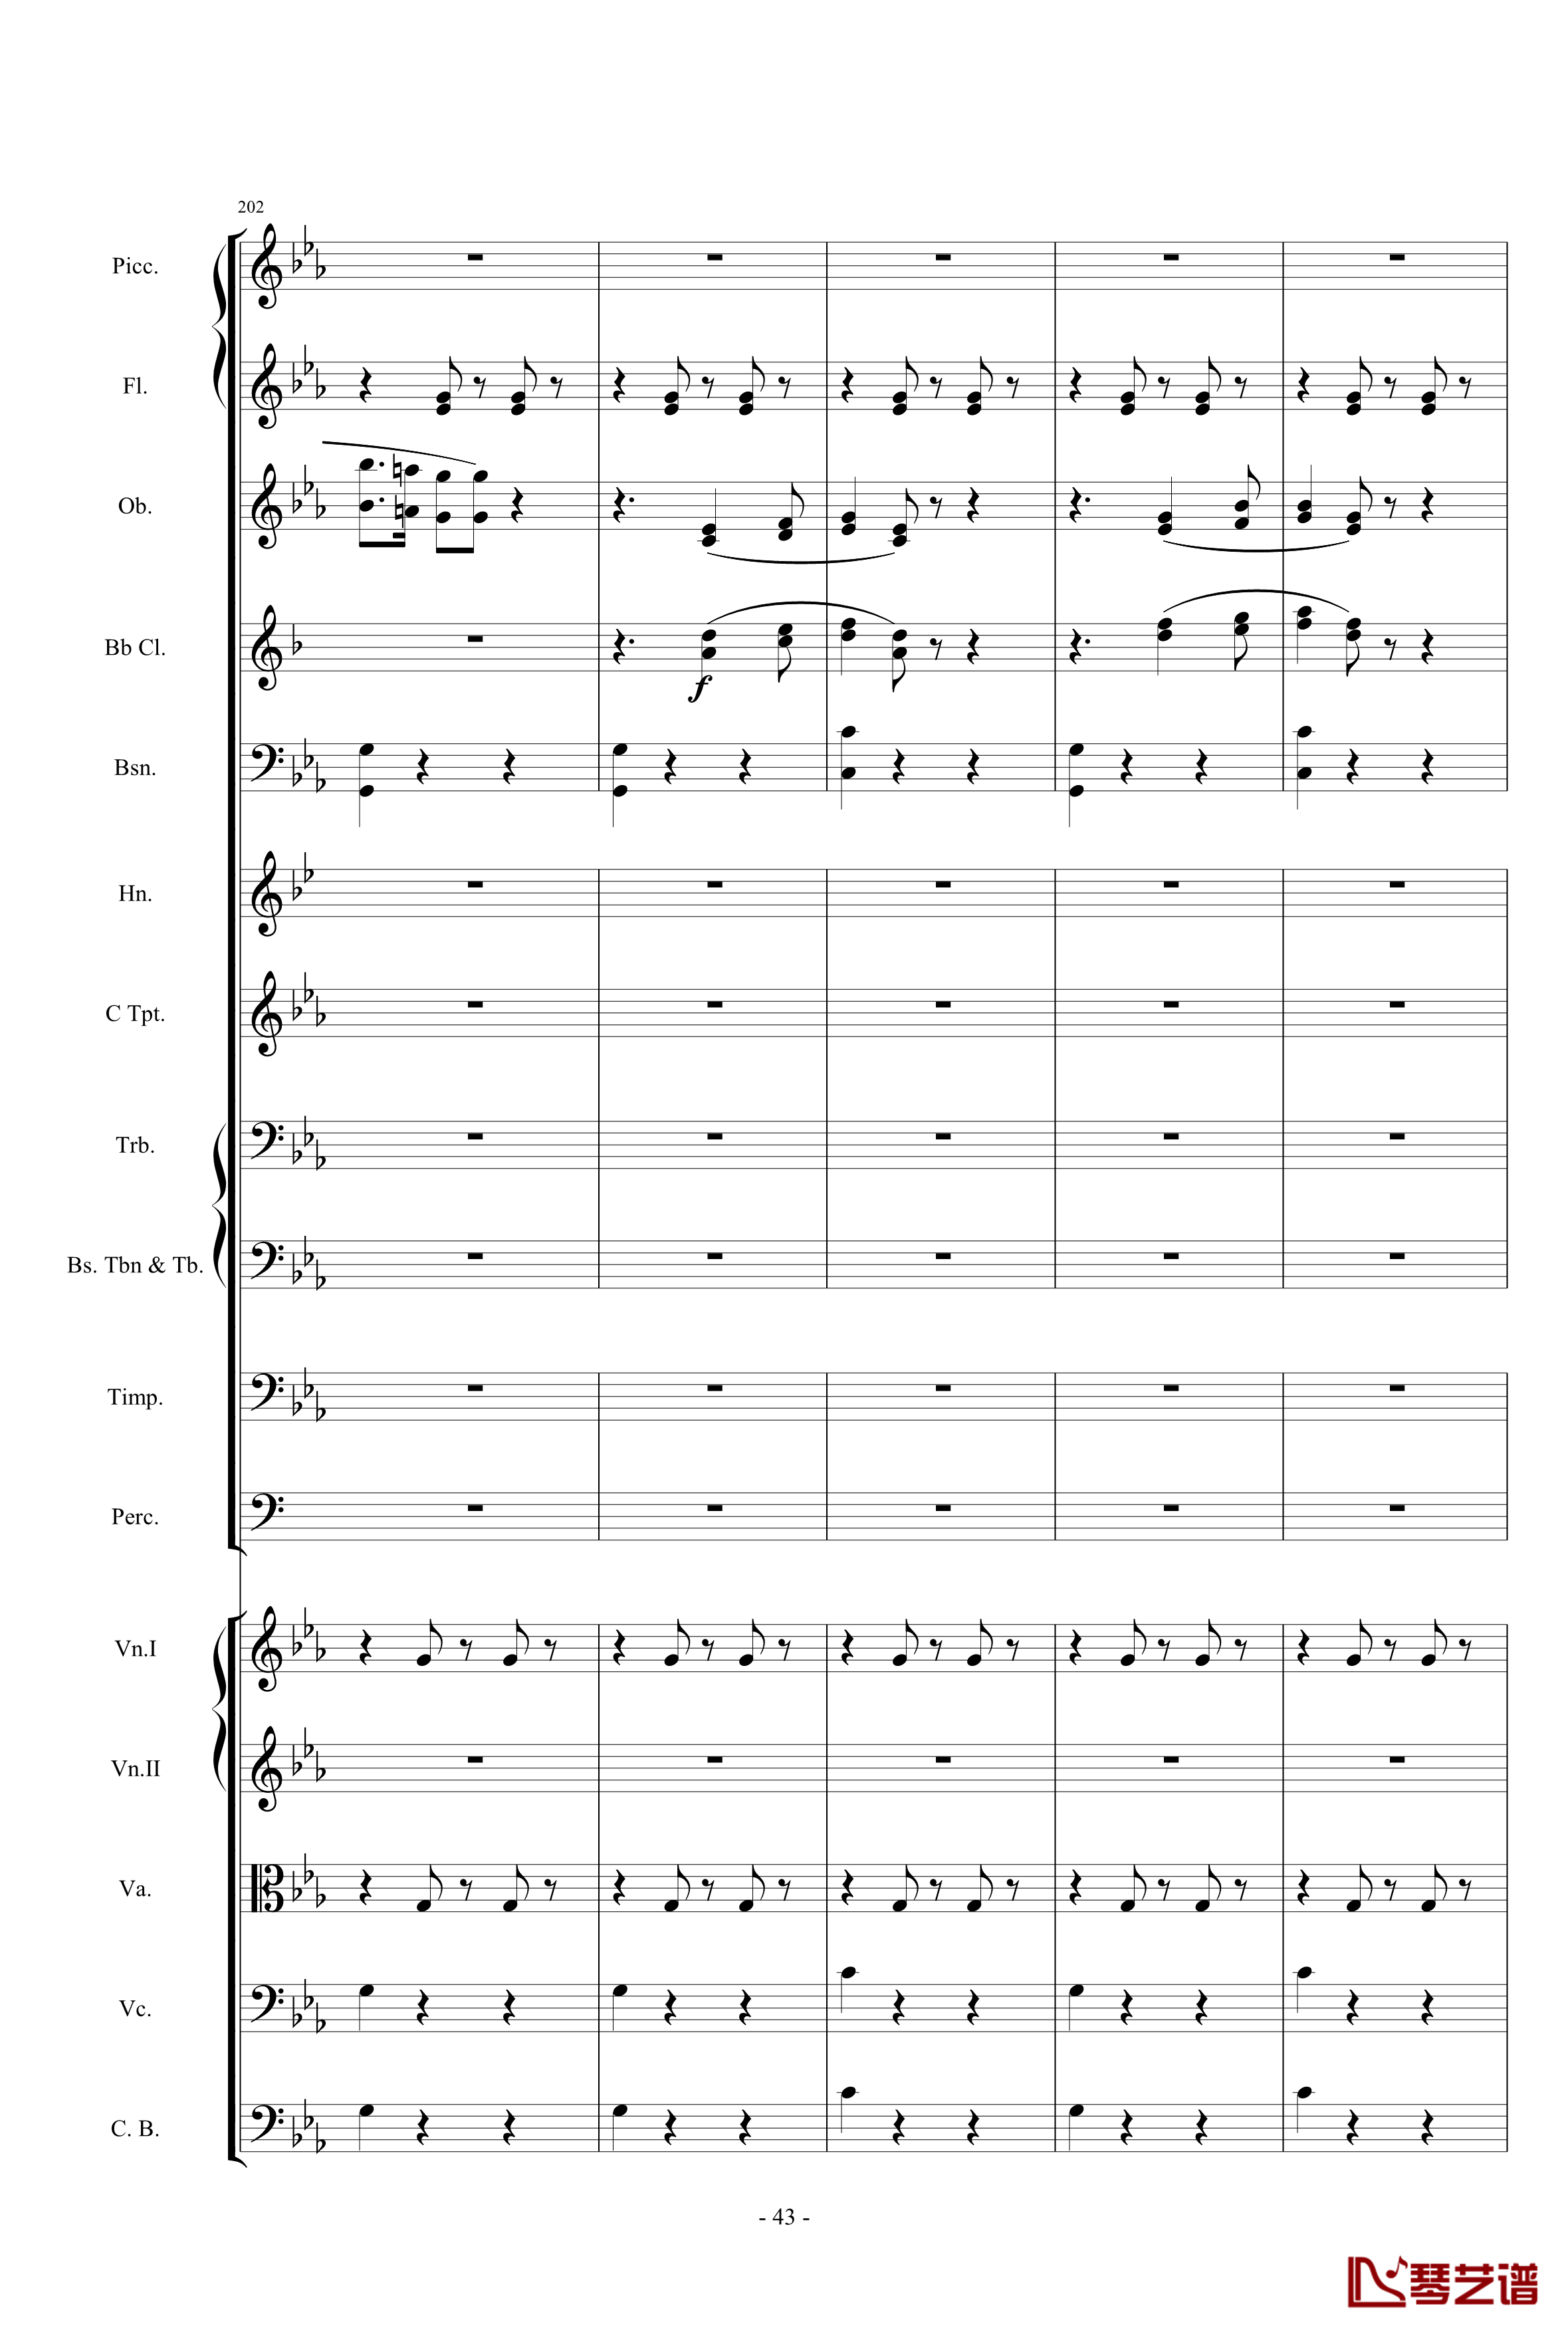 愤怒的小鸟交响曲第三乐章Op.5 no.3钢琴谱-1057257843